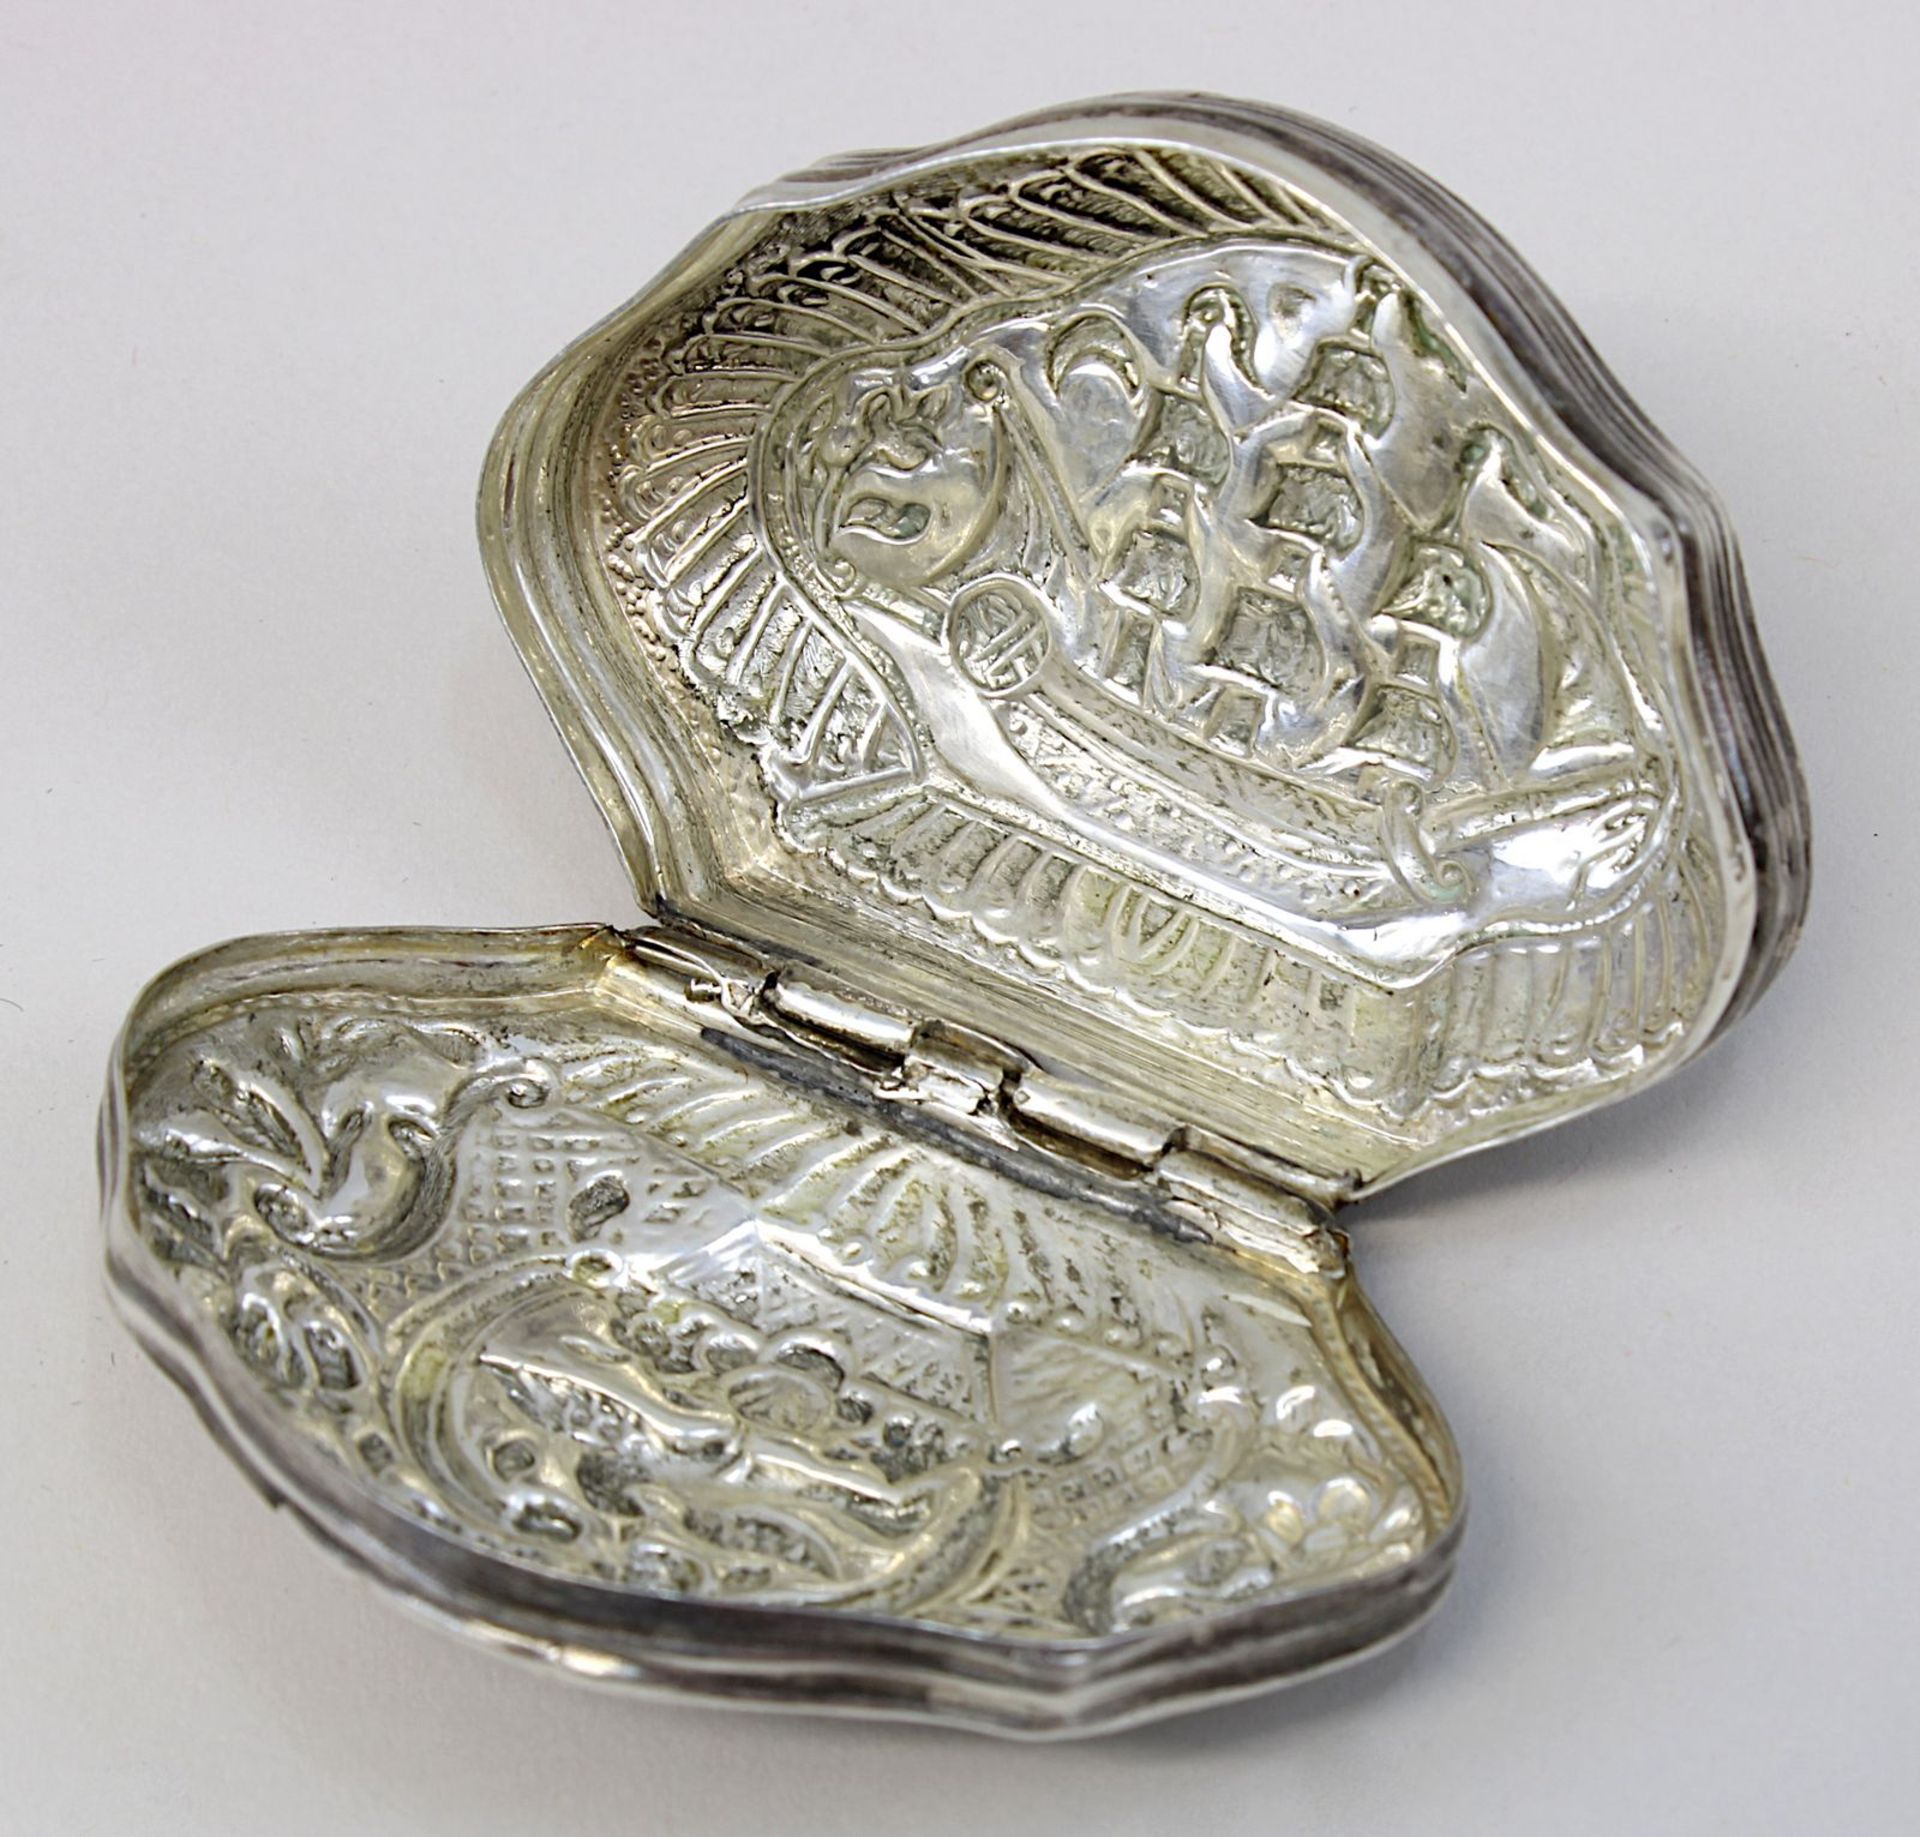 Silberdose mit Vogel- und Schiffsmotiv, geschweifte Form mit anscharniertem Deckel, getriebener - Image 3 of 3